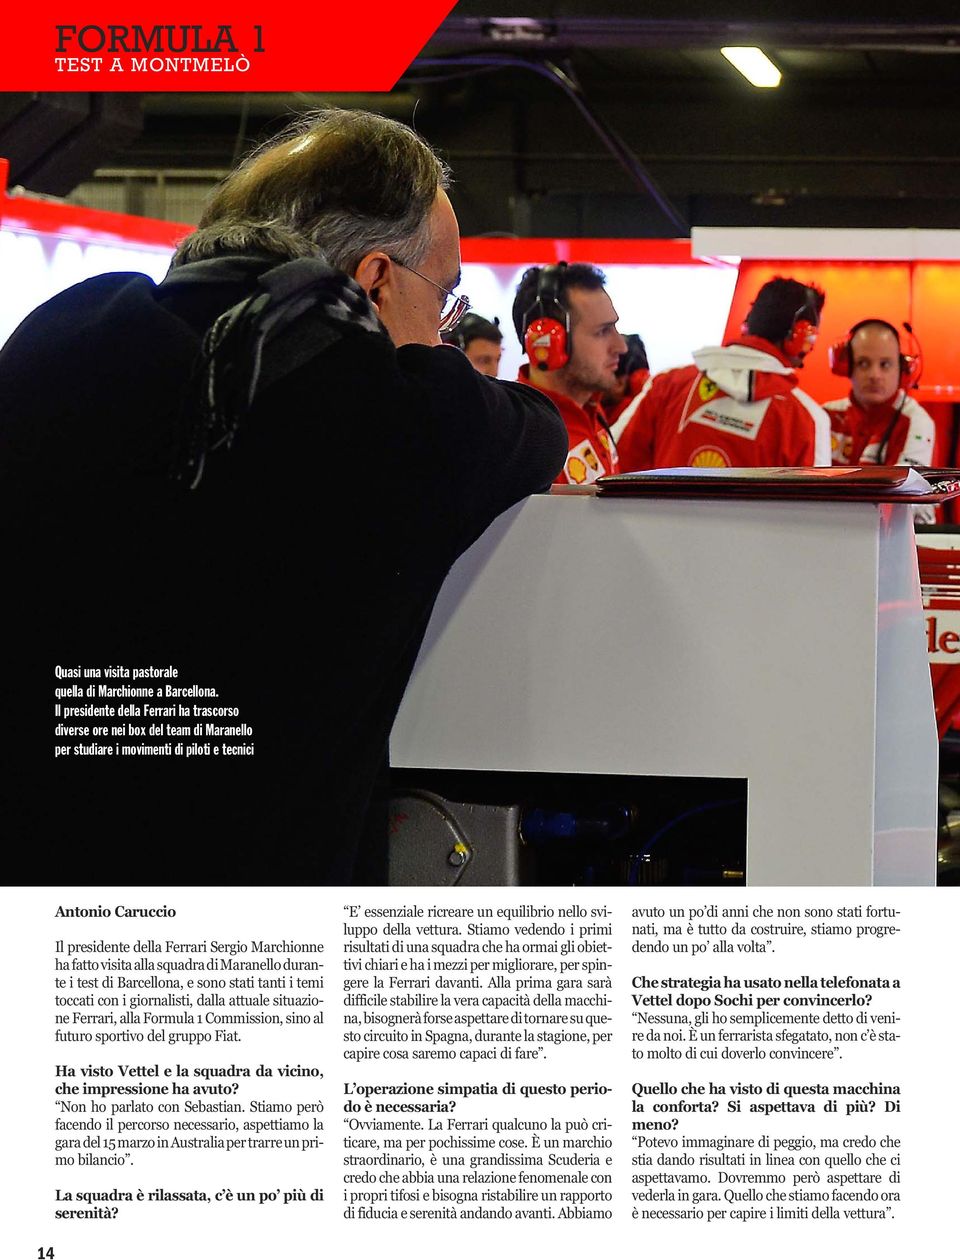 fatto visita alla squadra di Maranello durante i test di Barcellona, e sono stati tanti i temi toccati con i giornalisti, dalla attuale situazione Ferrari, alla Formula 1 Commission, sino al futuro